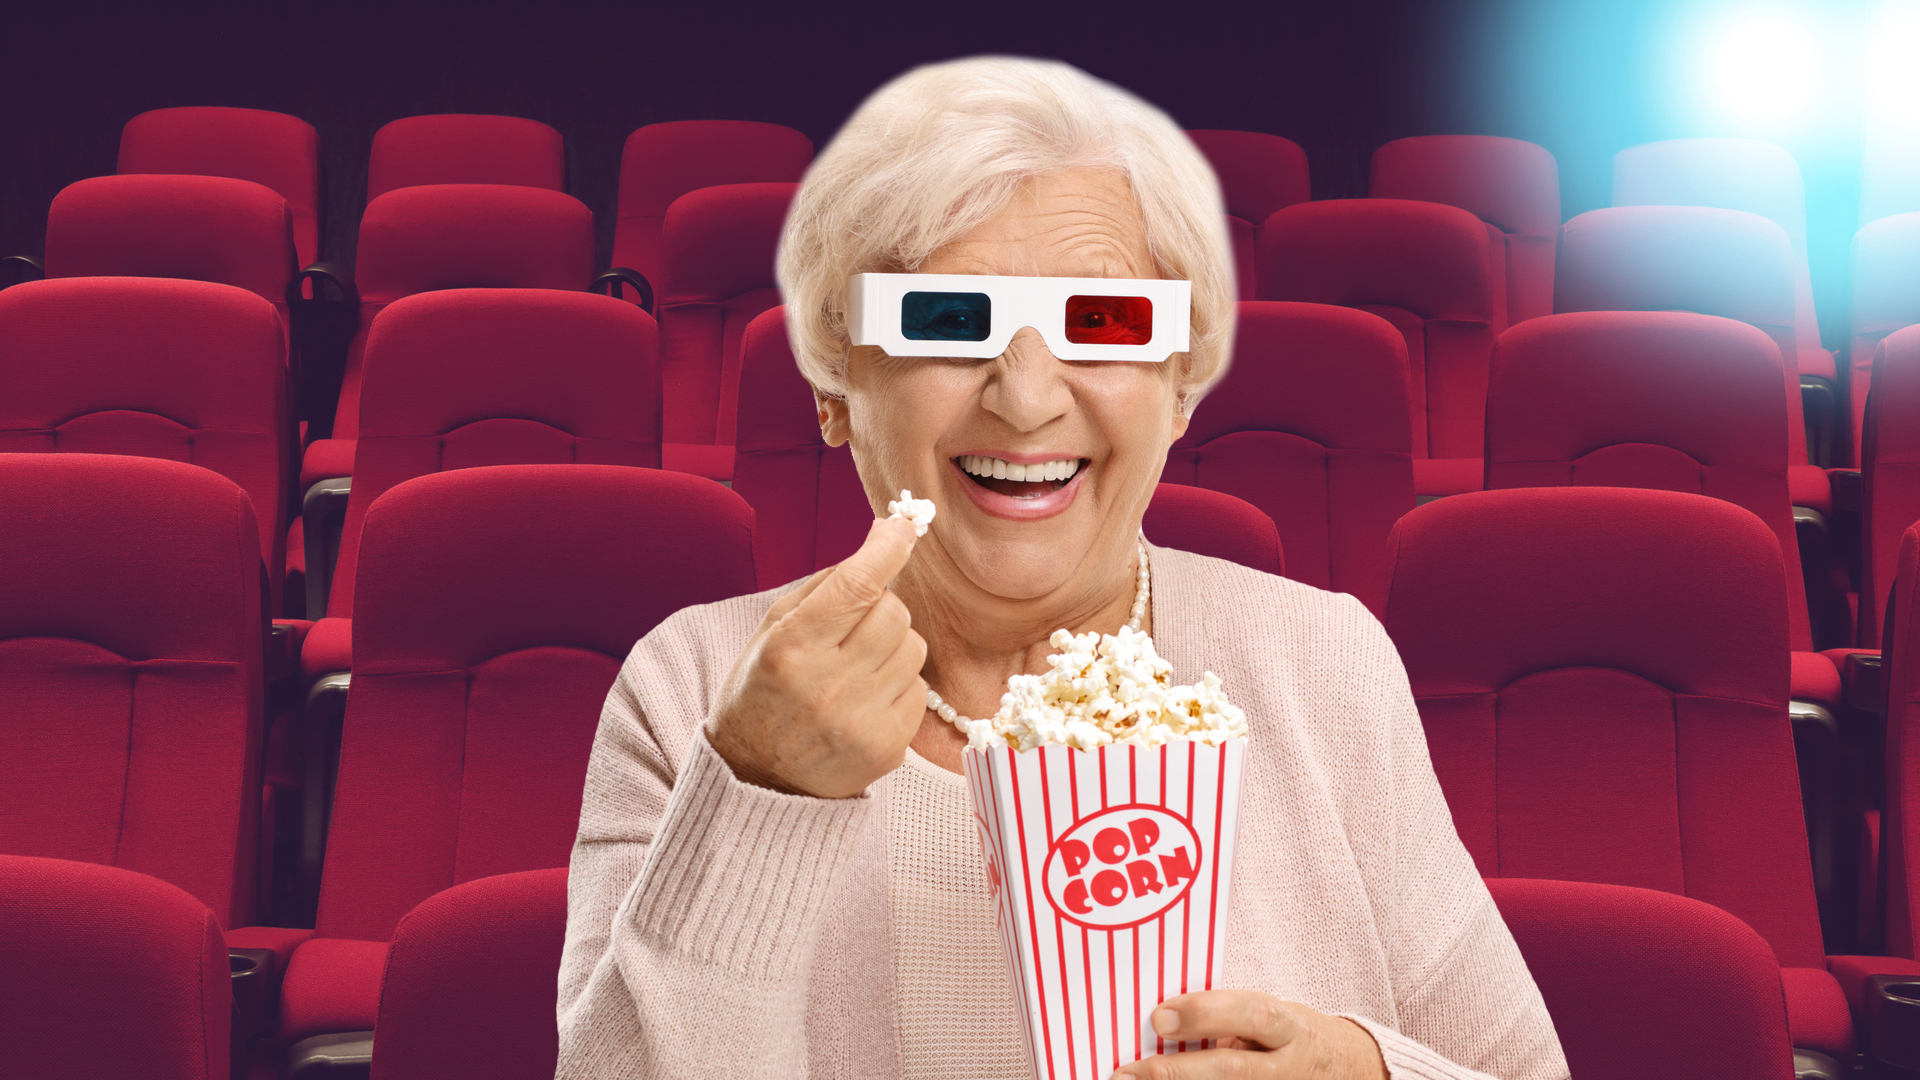 A gran eating popcorn at the cinema